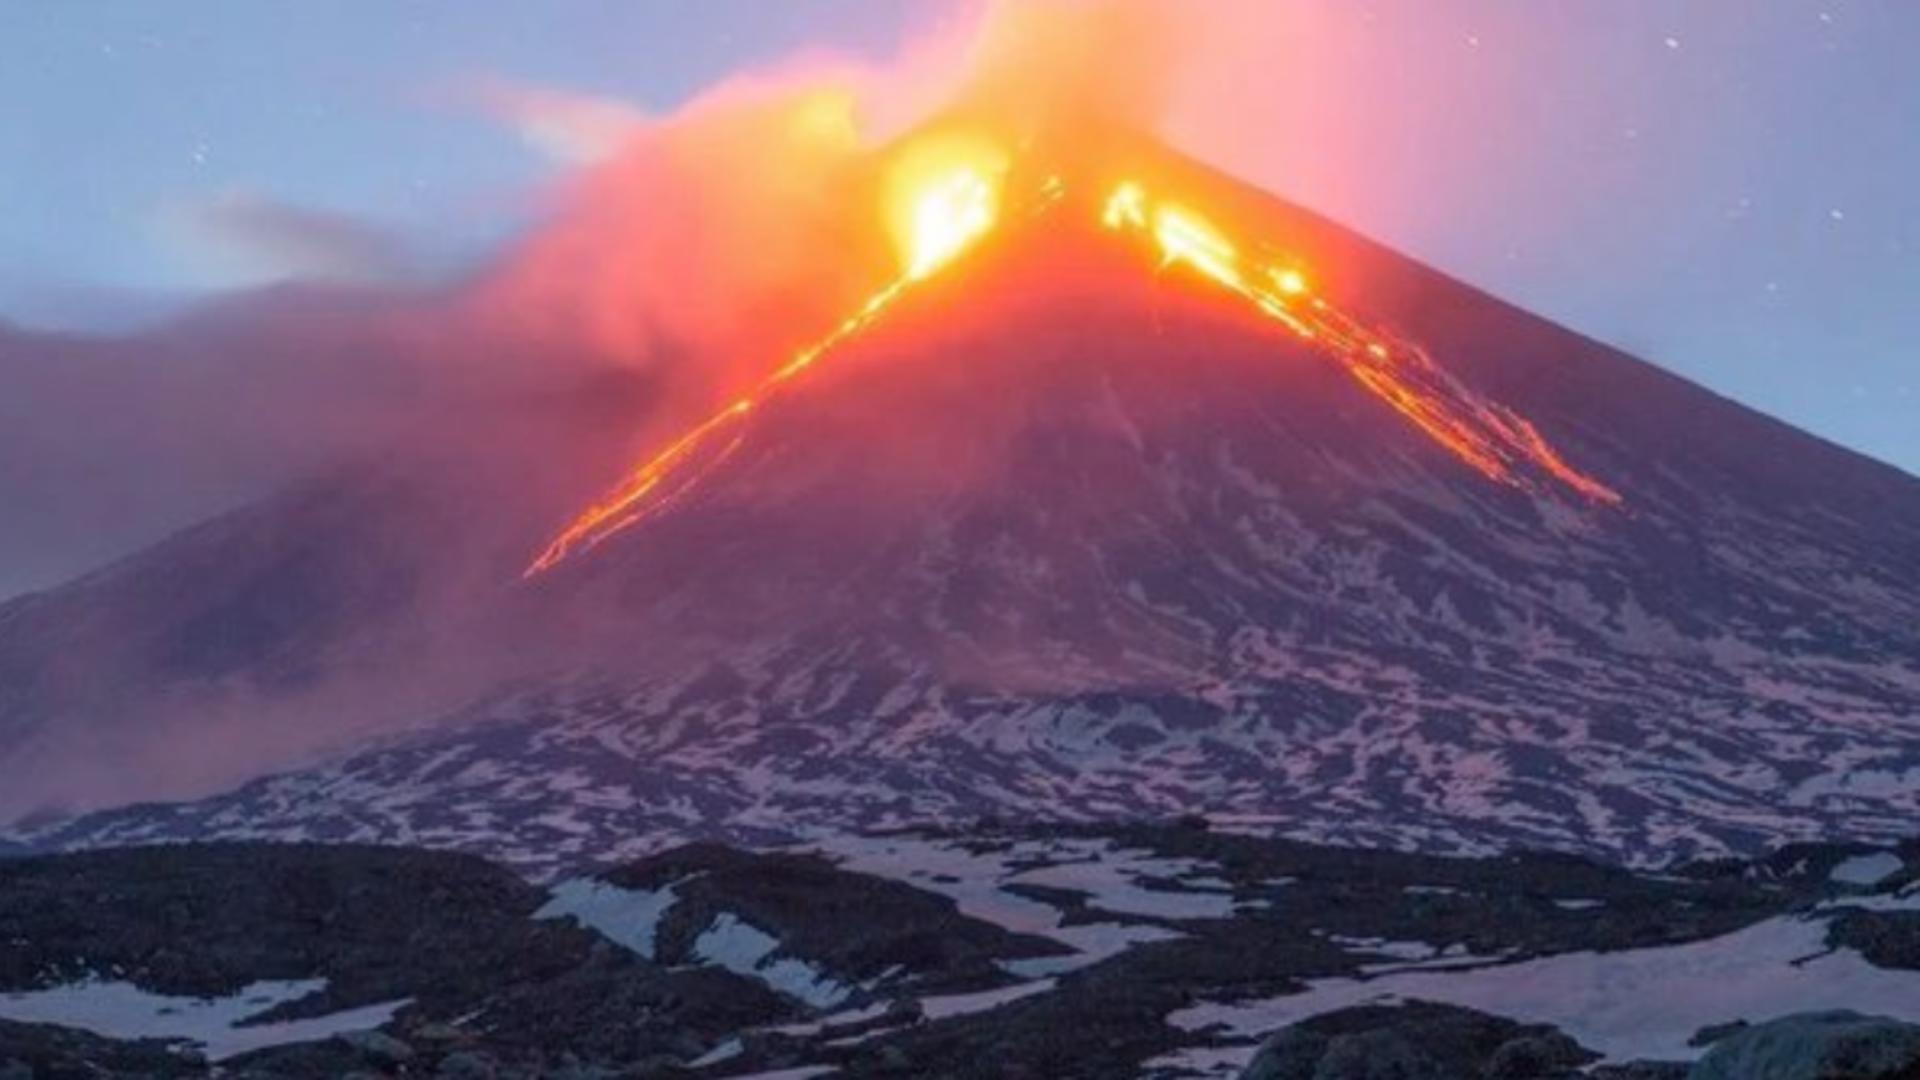 Erupție vulcanică simultană în Rusia - Se așteaptă activitate foarte puternică în următoarele ore - Imaginile surprinse - FOTO&VIDEO